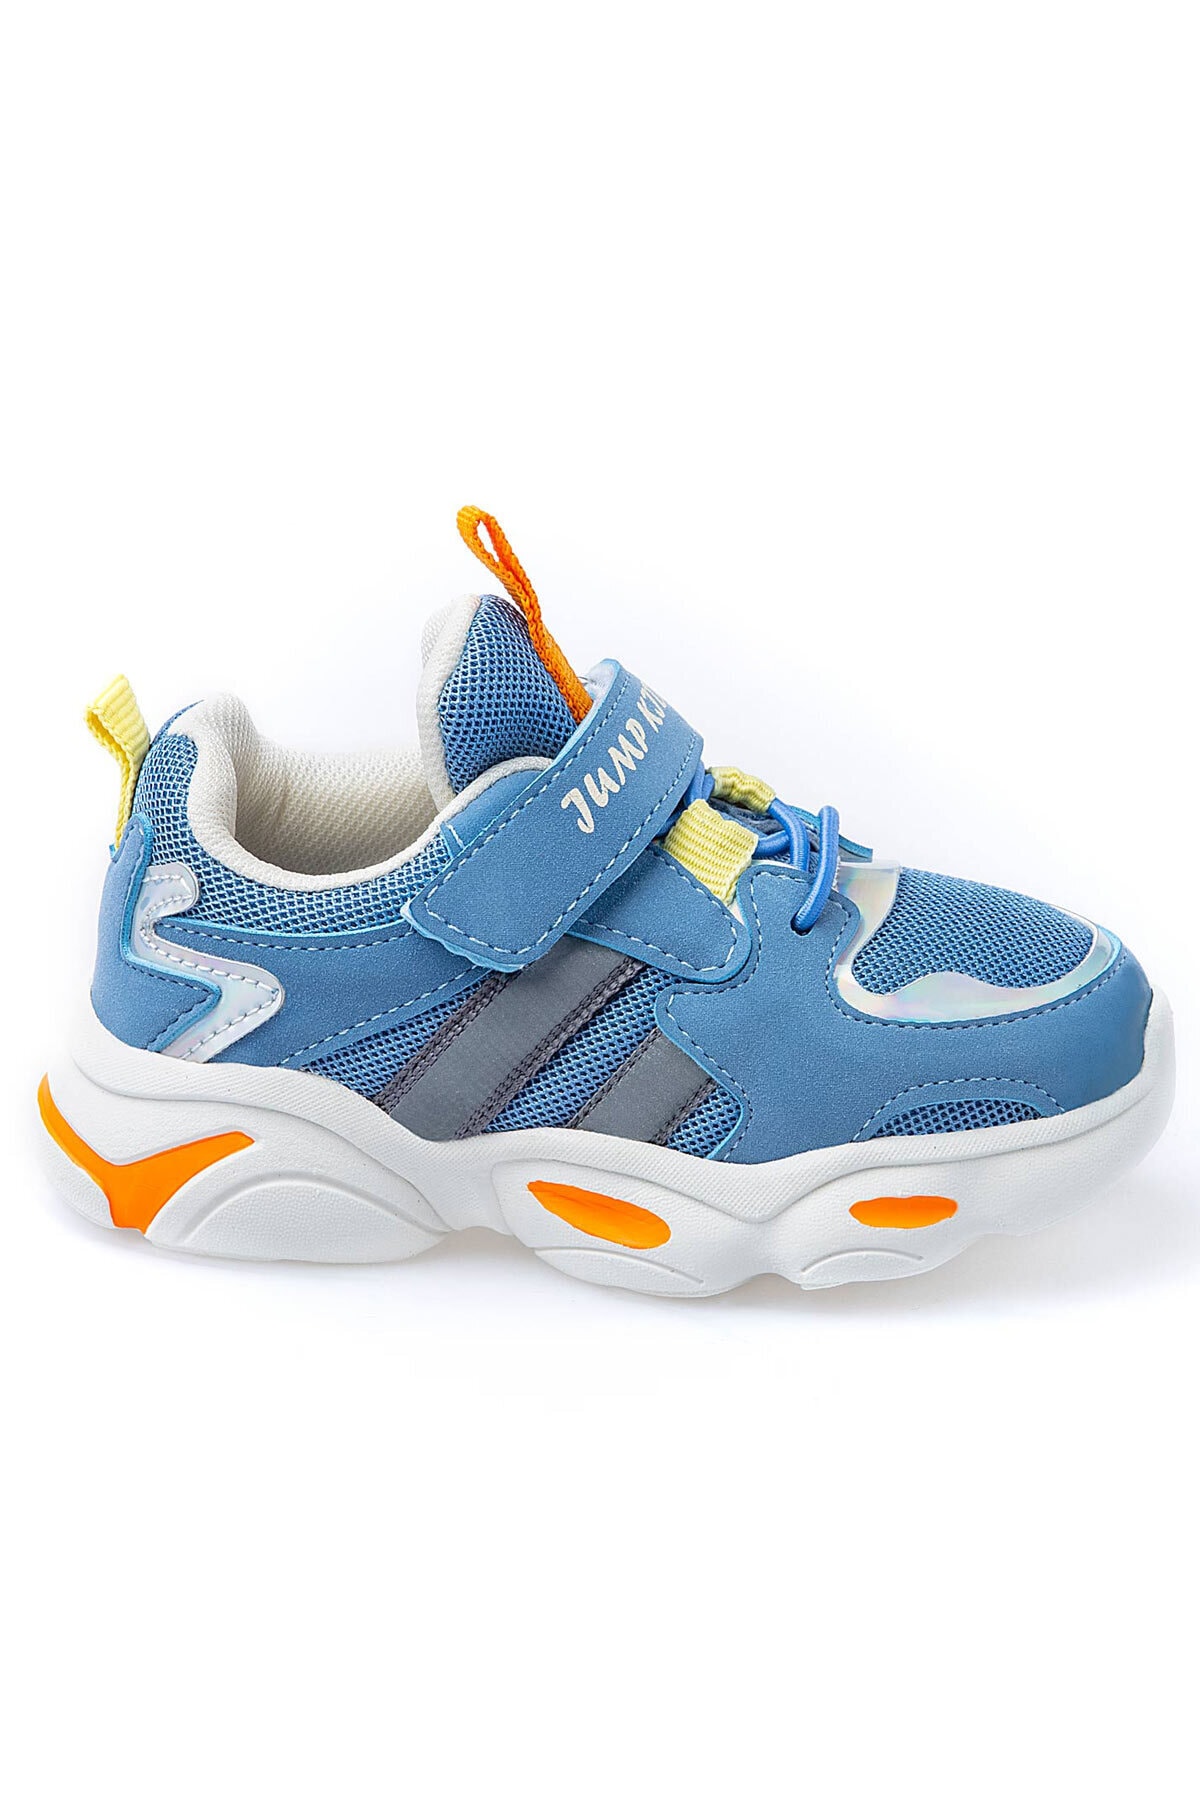 Çocuk Spor Ayakkabı 26056 G Blue/yellow/orange